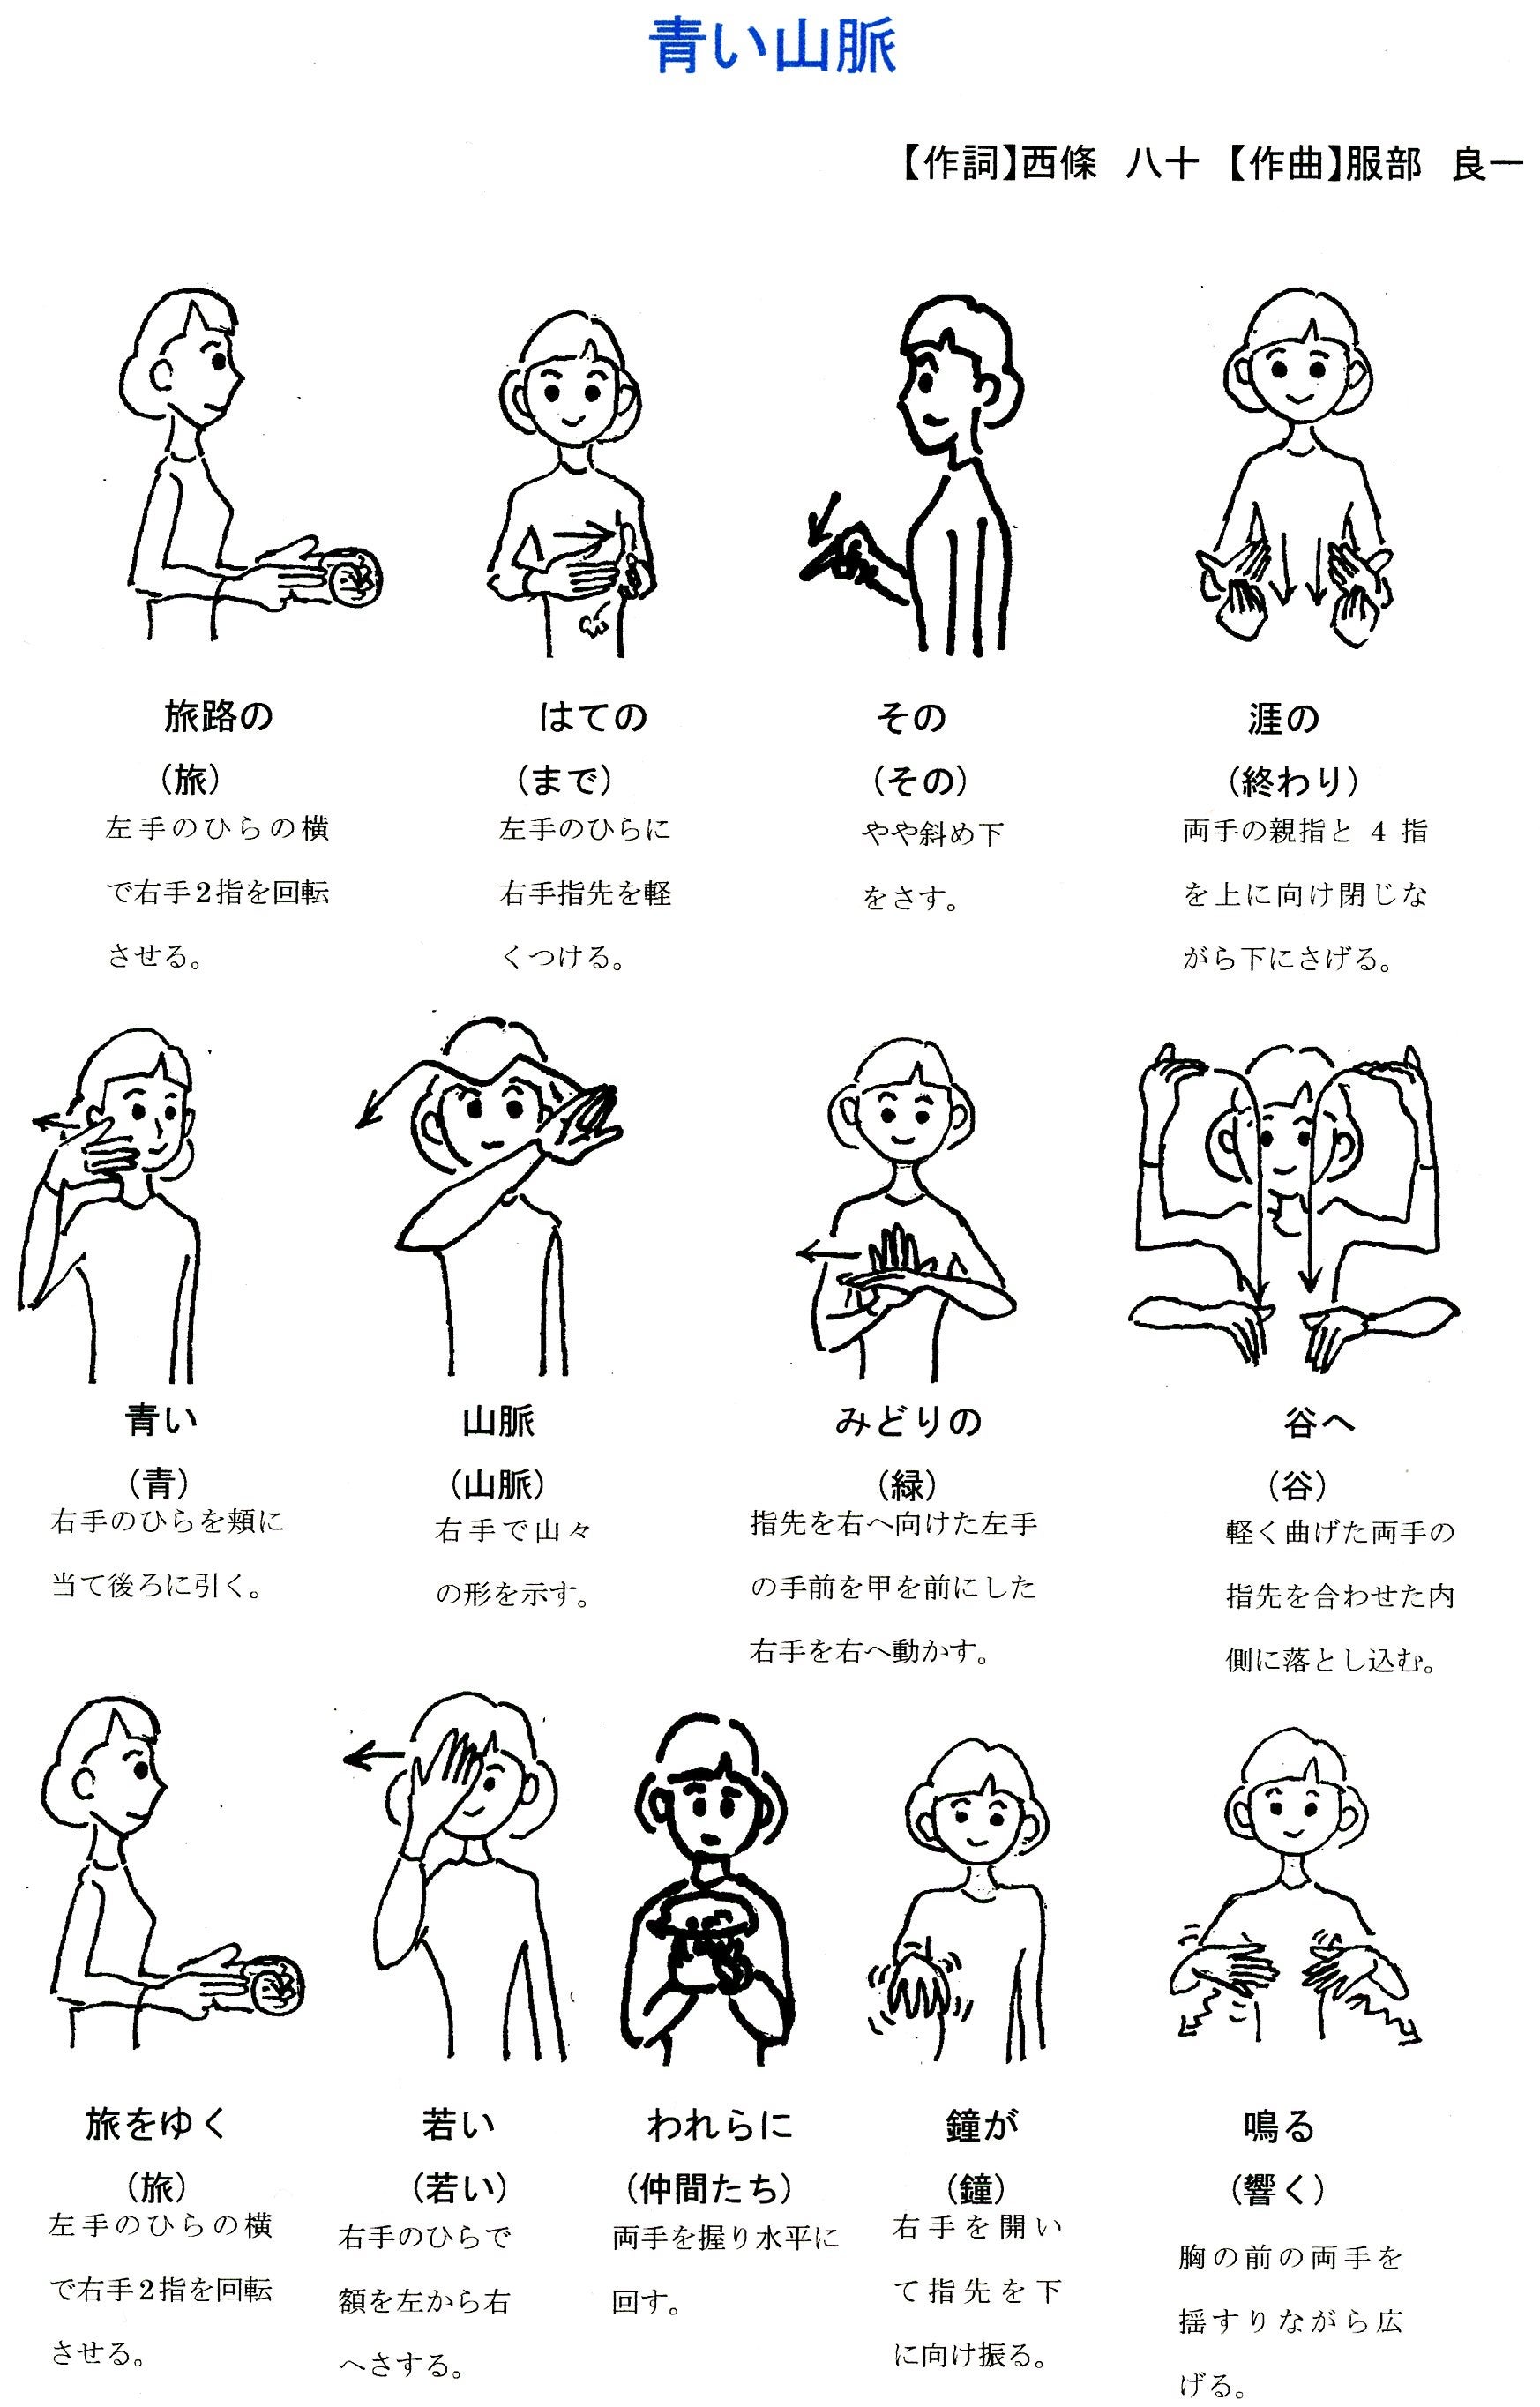 日本手話の方言